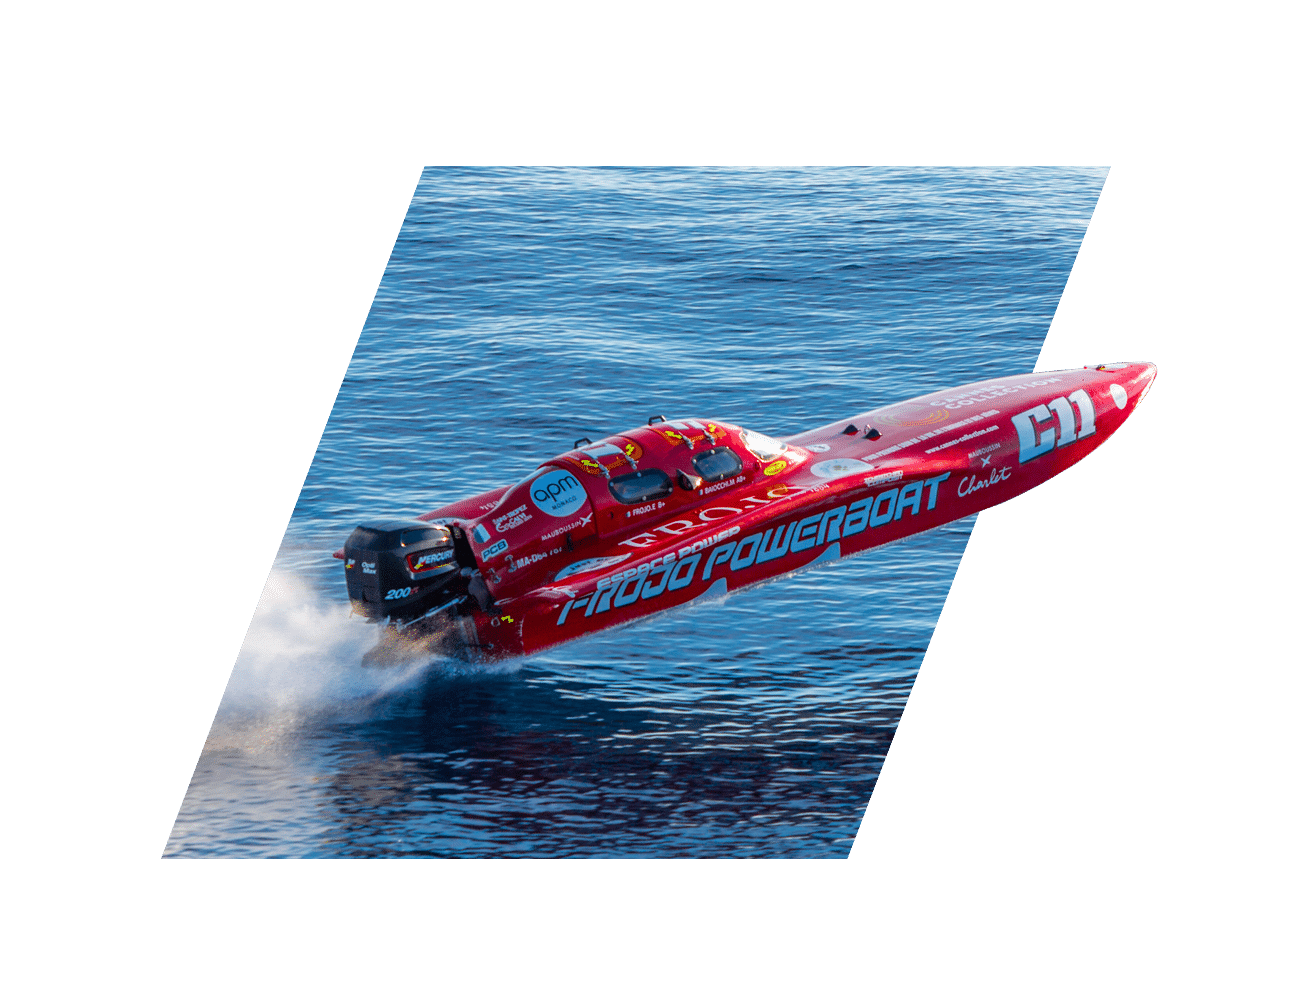 Frojo Powerboat Challenge Perspective d'Avenir